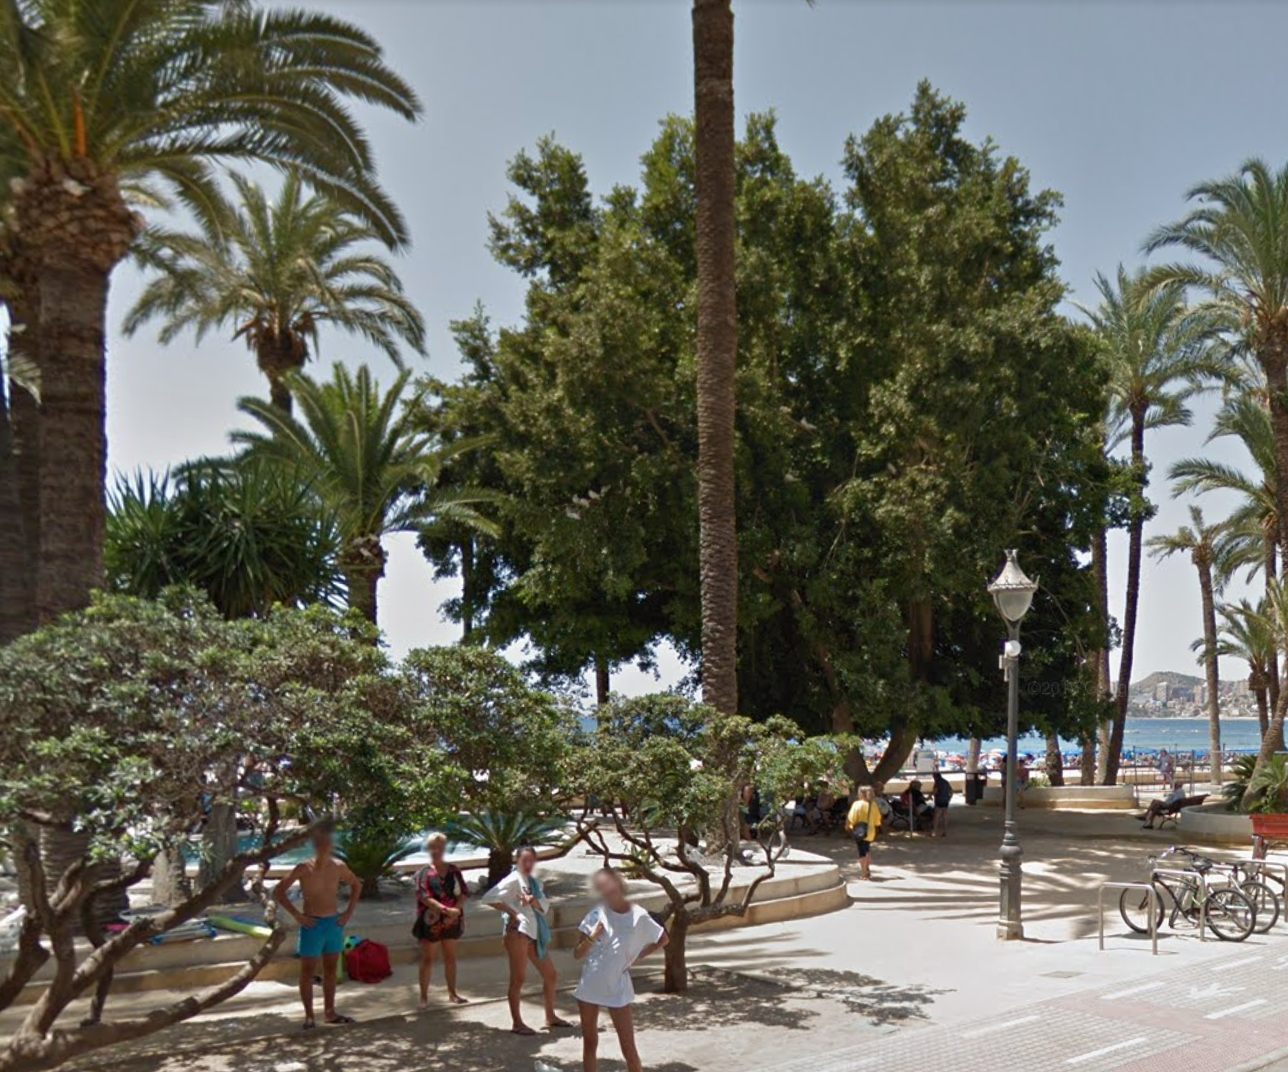 Parque de Elche by Google Earth